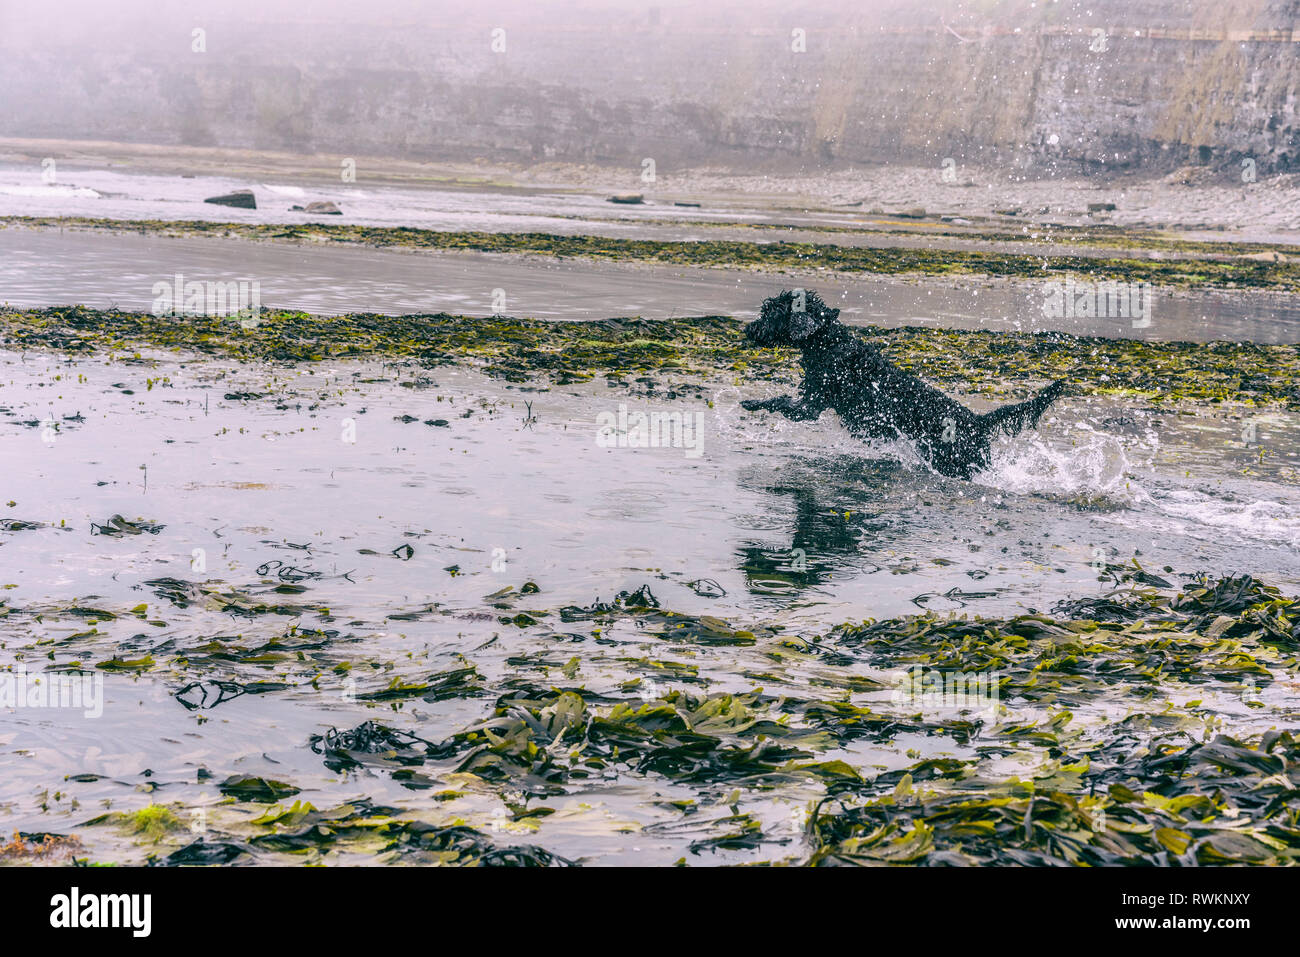 Dog splashing in seaside Stock Photo